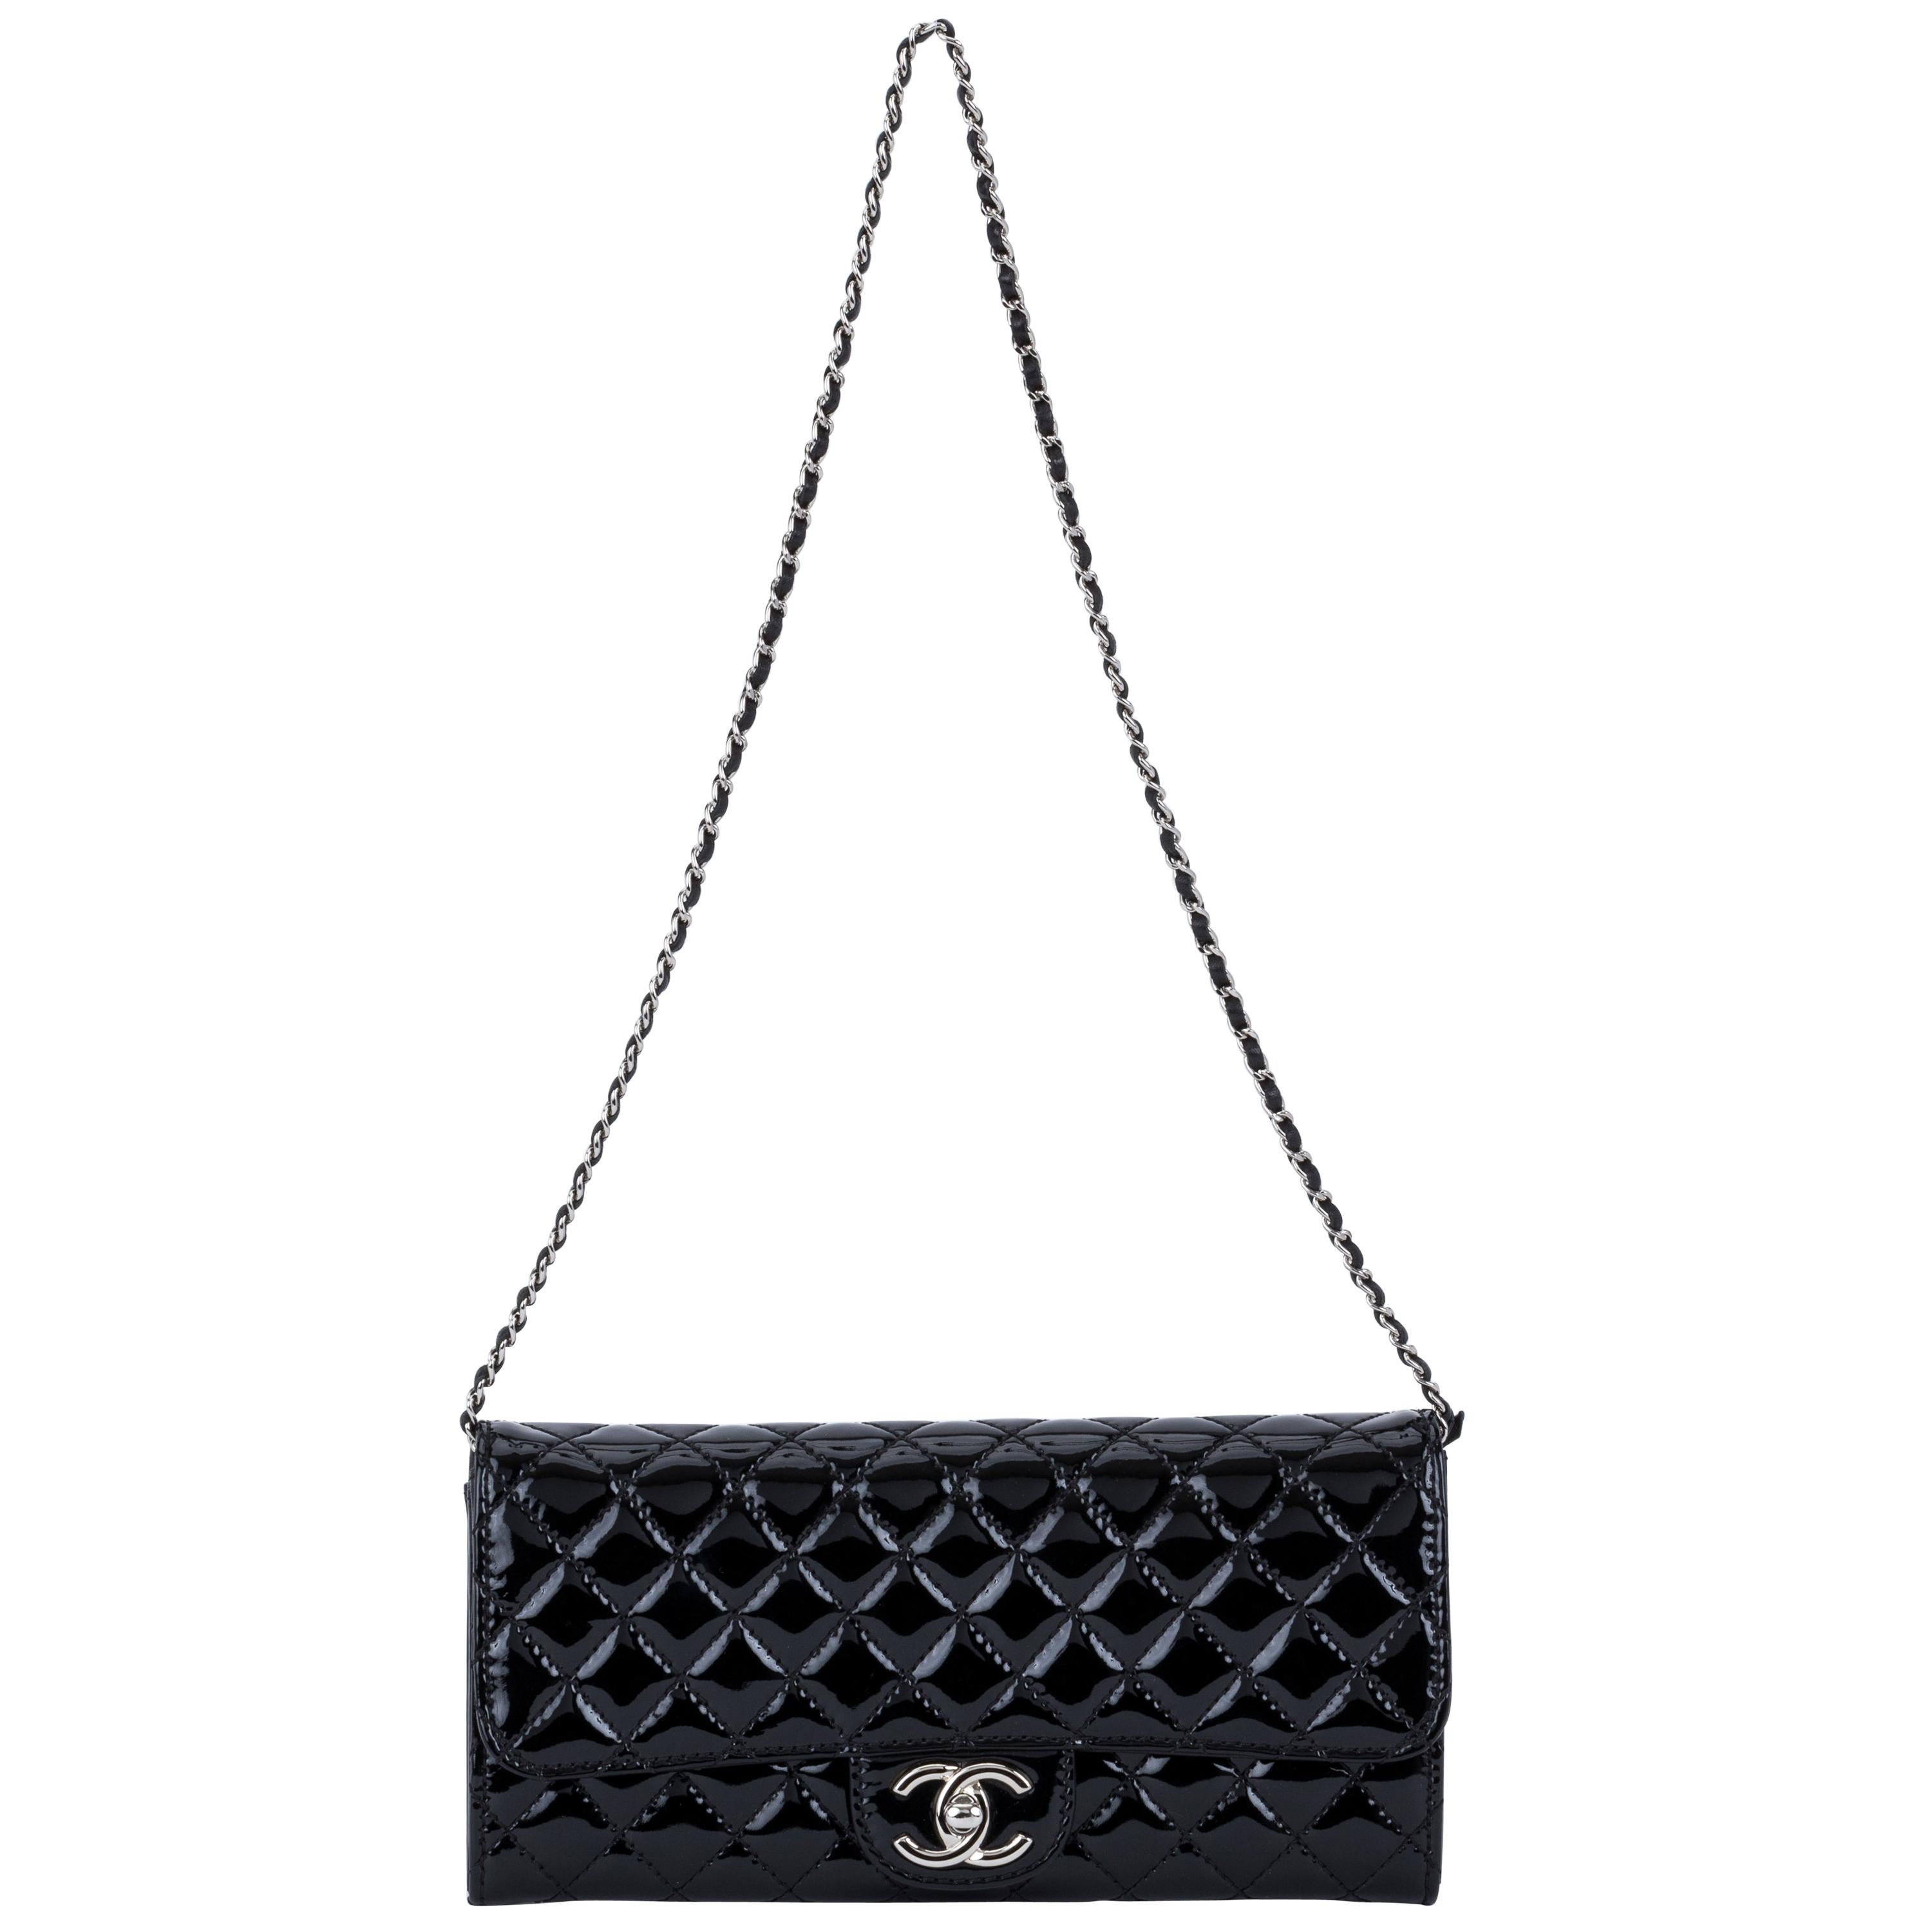 Chanel Black Patent 2 Way Pouchette Bag